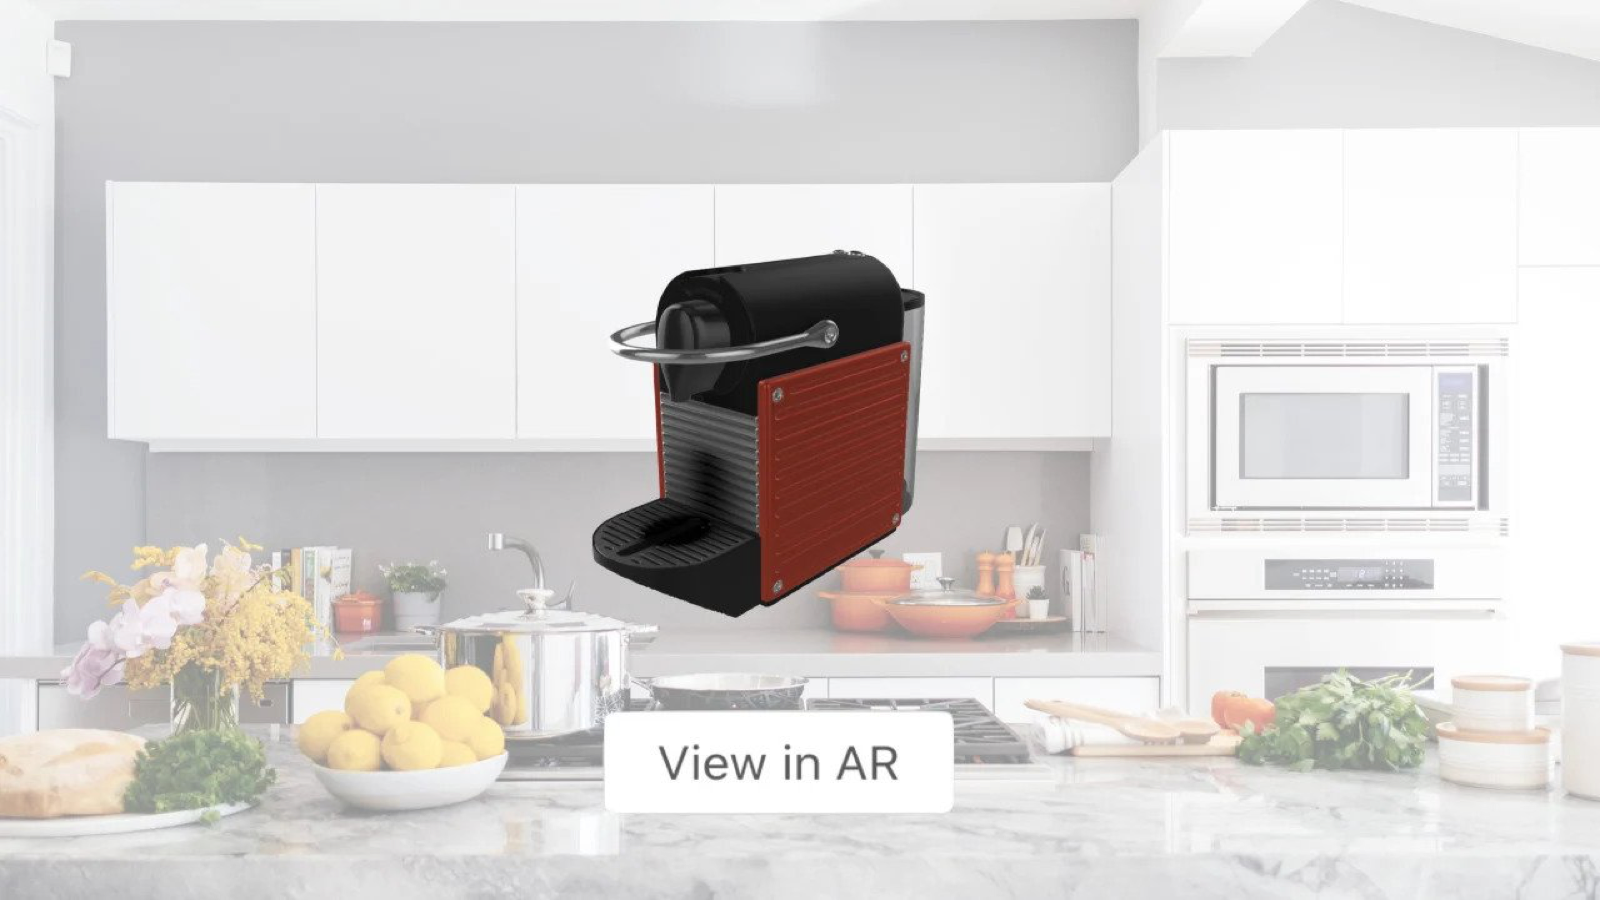 使购物者能够通过AR将产品放置在他们的家中